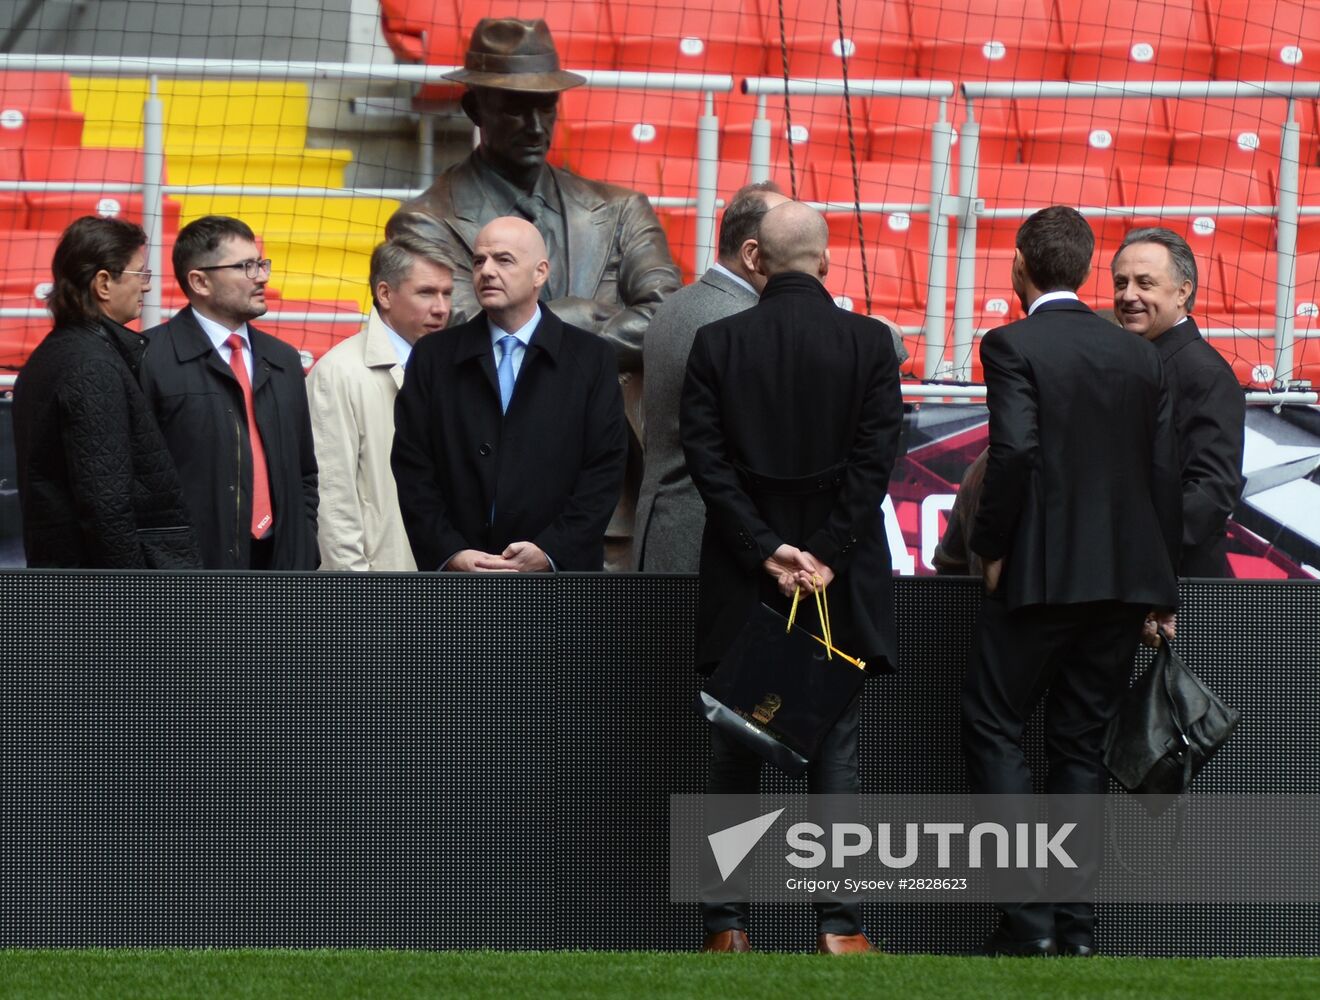 FIFA President Gianni Infantino visits Otkrytiye Arena stadium